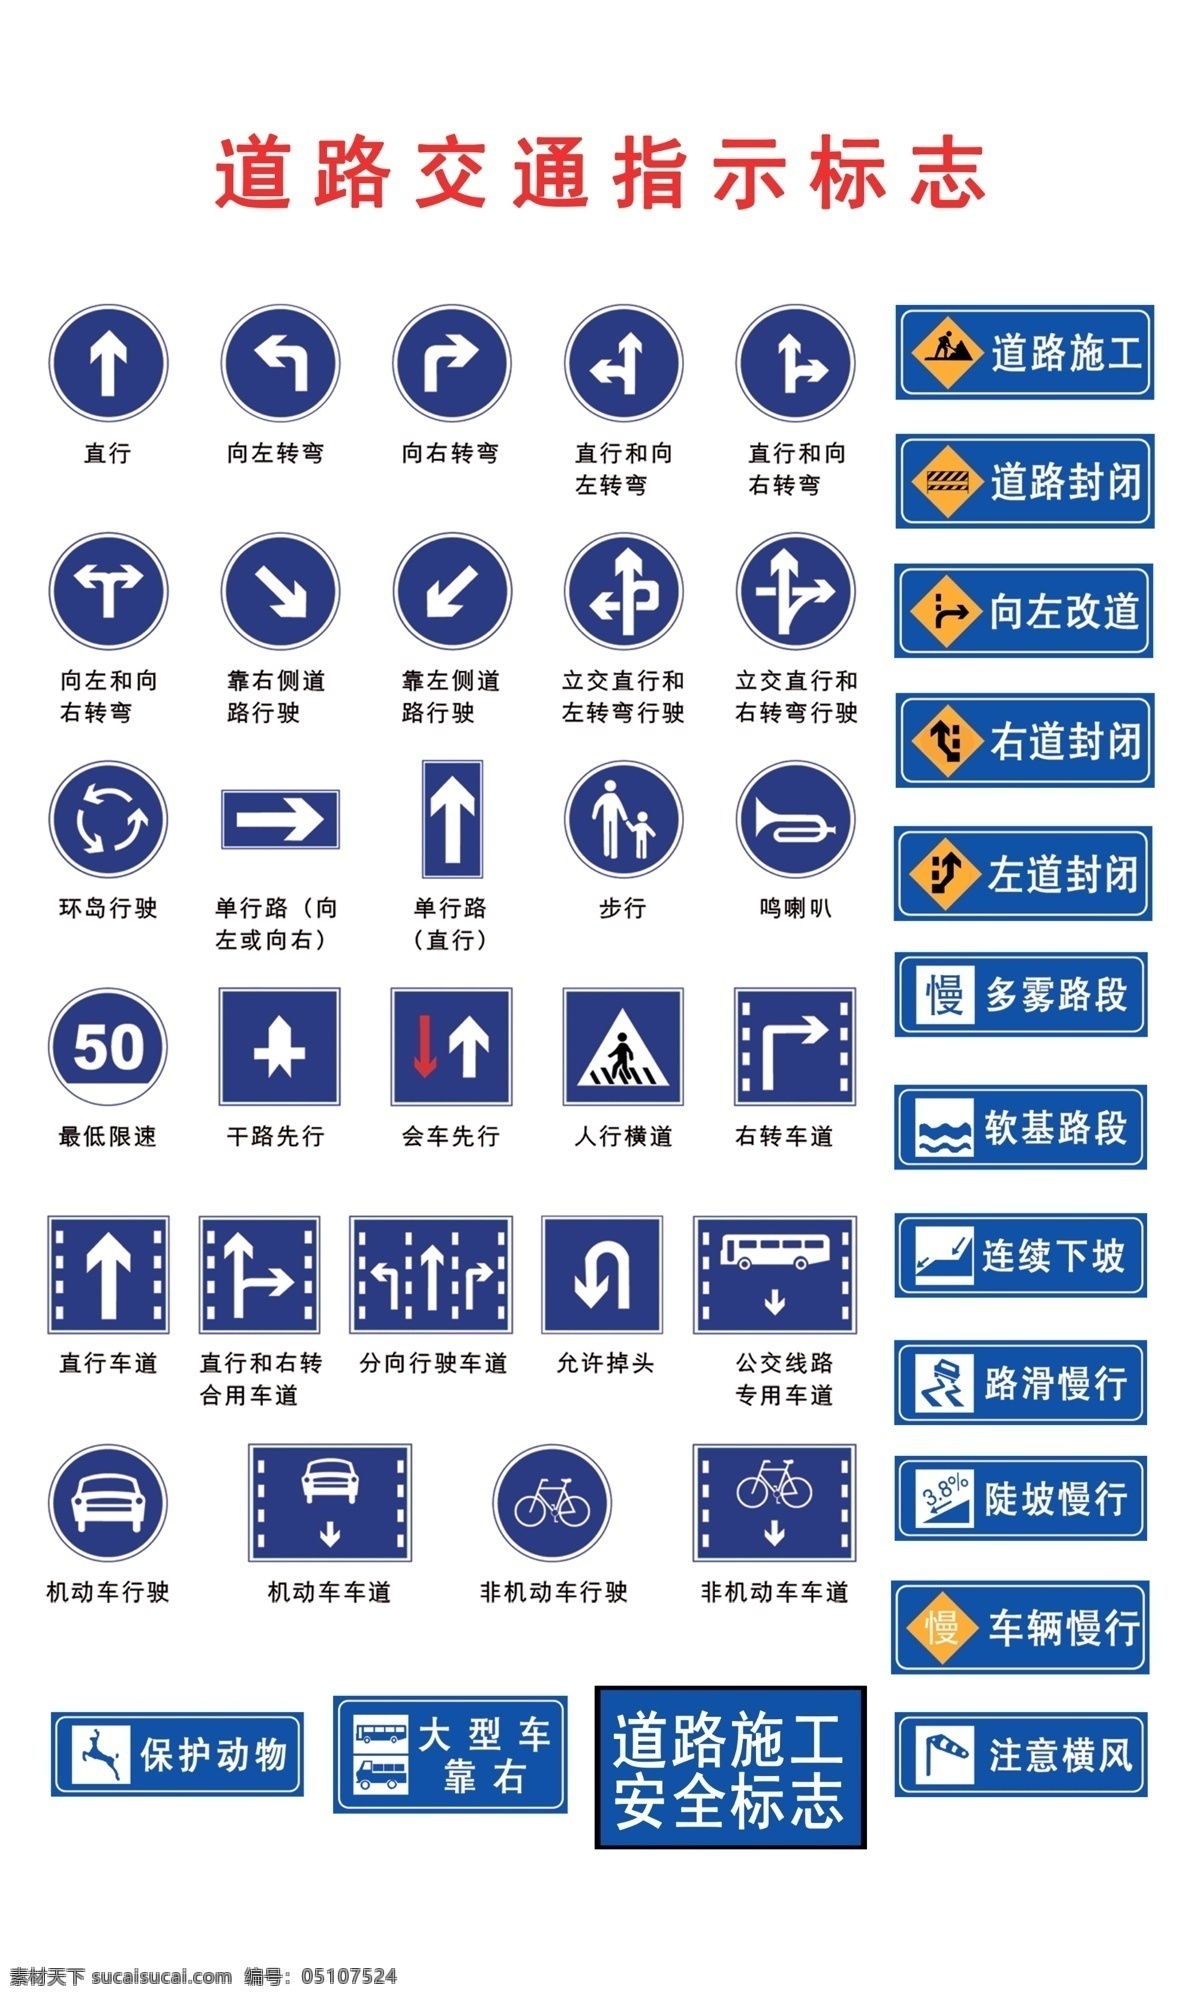 道路交通 标志 指示 道路交通标志 指示标志 道路交通安全 指示标志展板 展板模板 广告设计模板 源文件